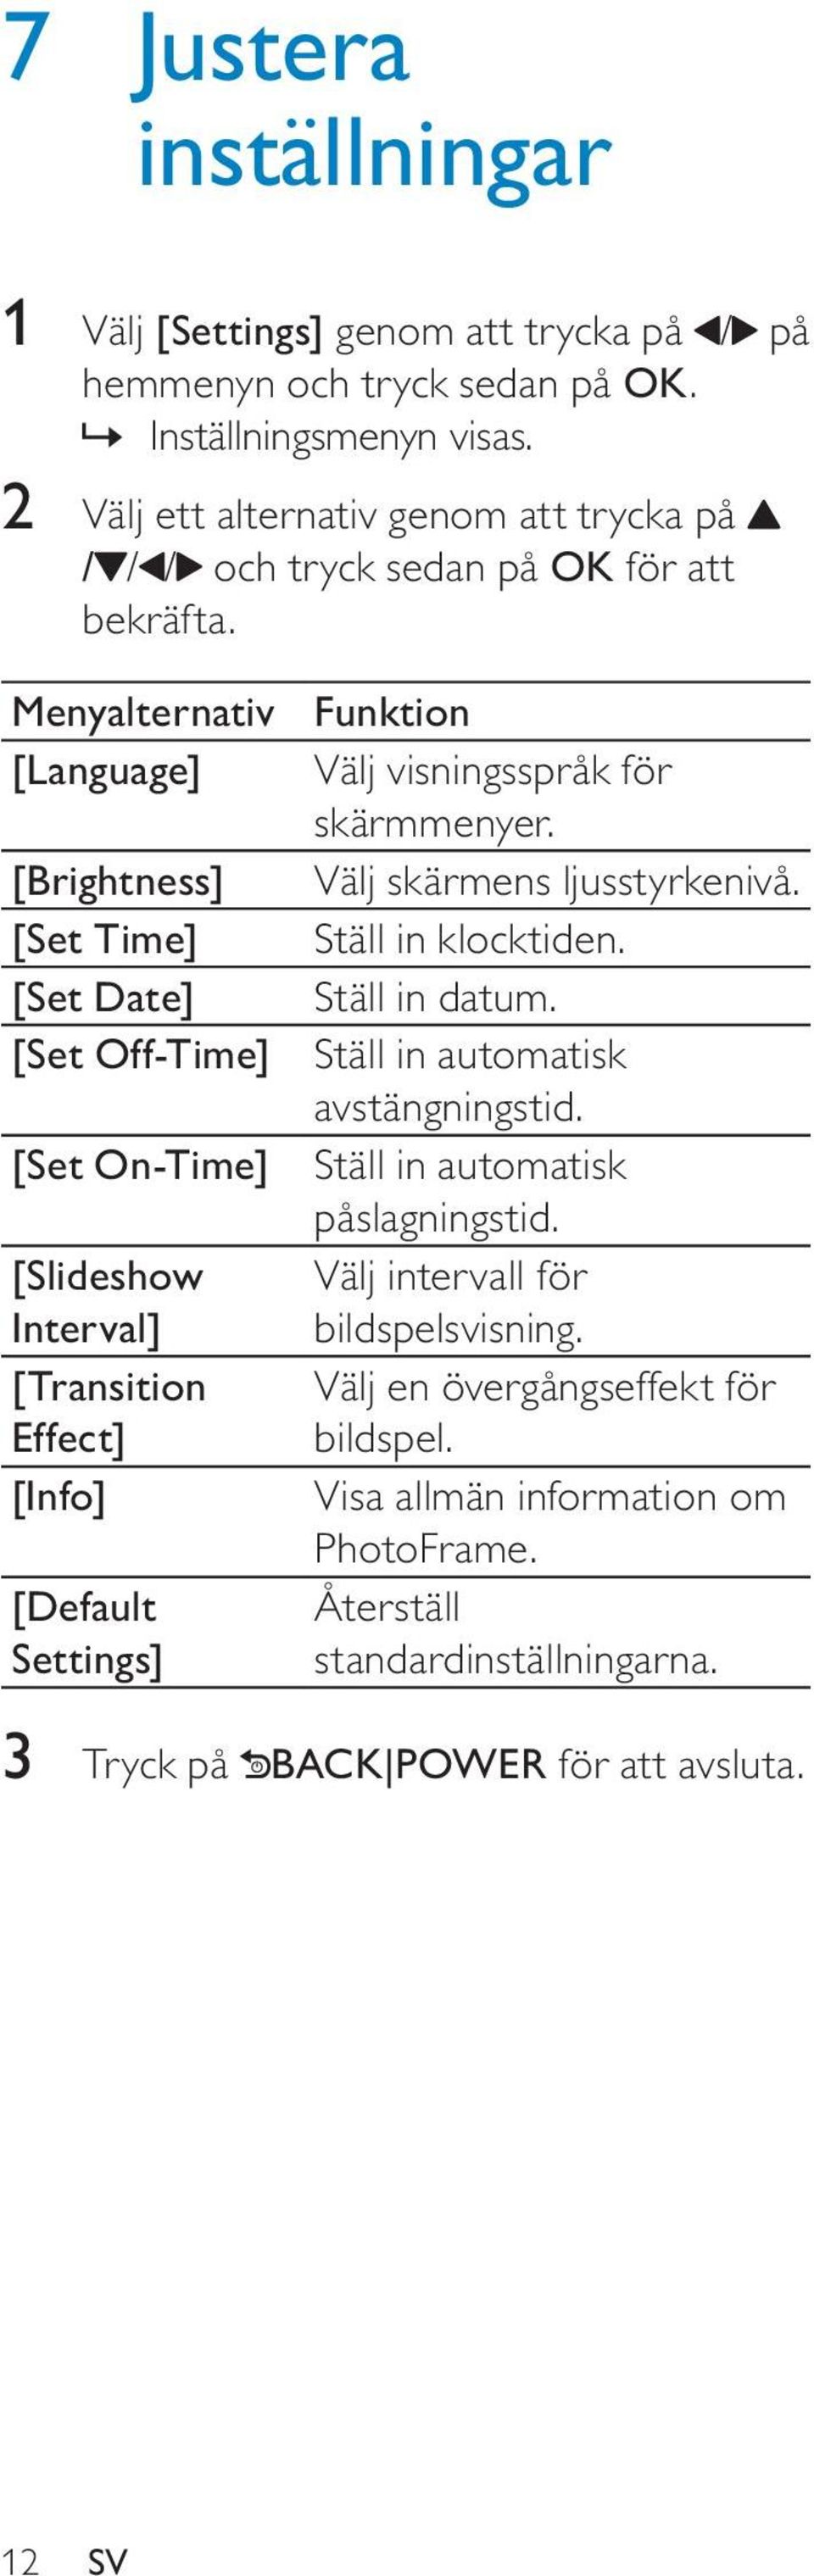 Menyalternativ [Language] [Brightness] [Set Time] [Set Date] [Set Off-Time] [Set On-Time] [Slideshow Interval] [Transition Effect] [Info] [Default Settings] Funktion Välj visningsspråk